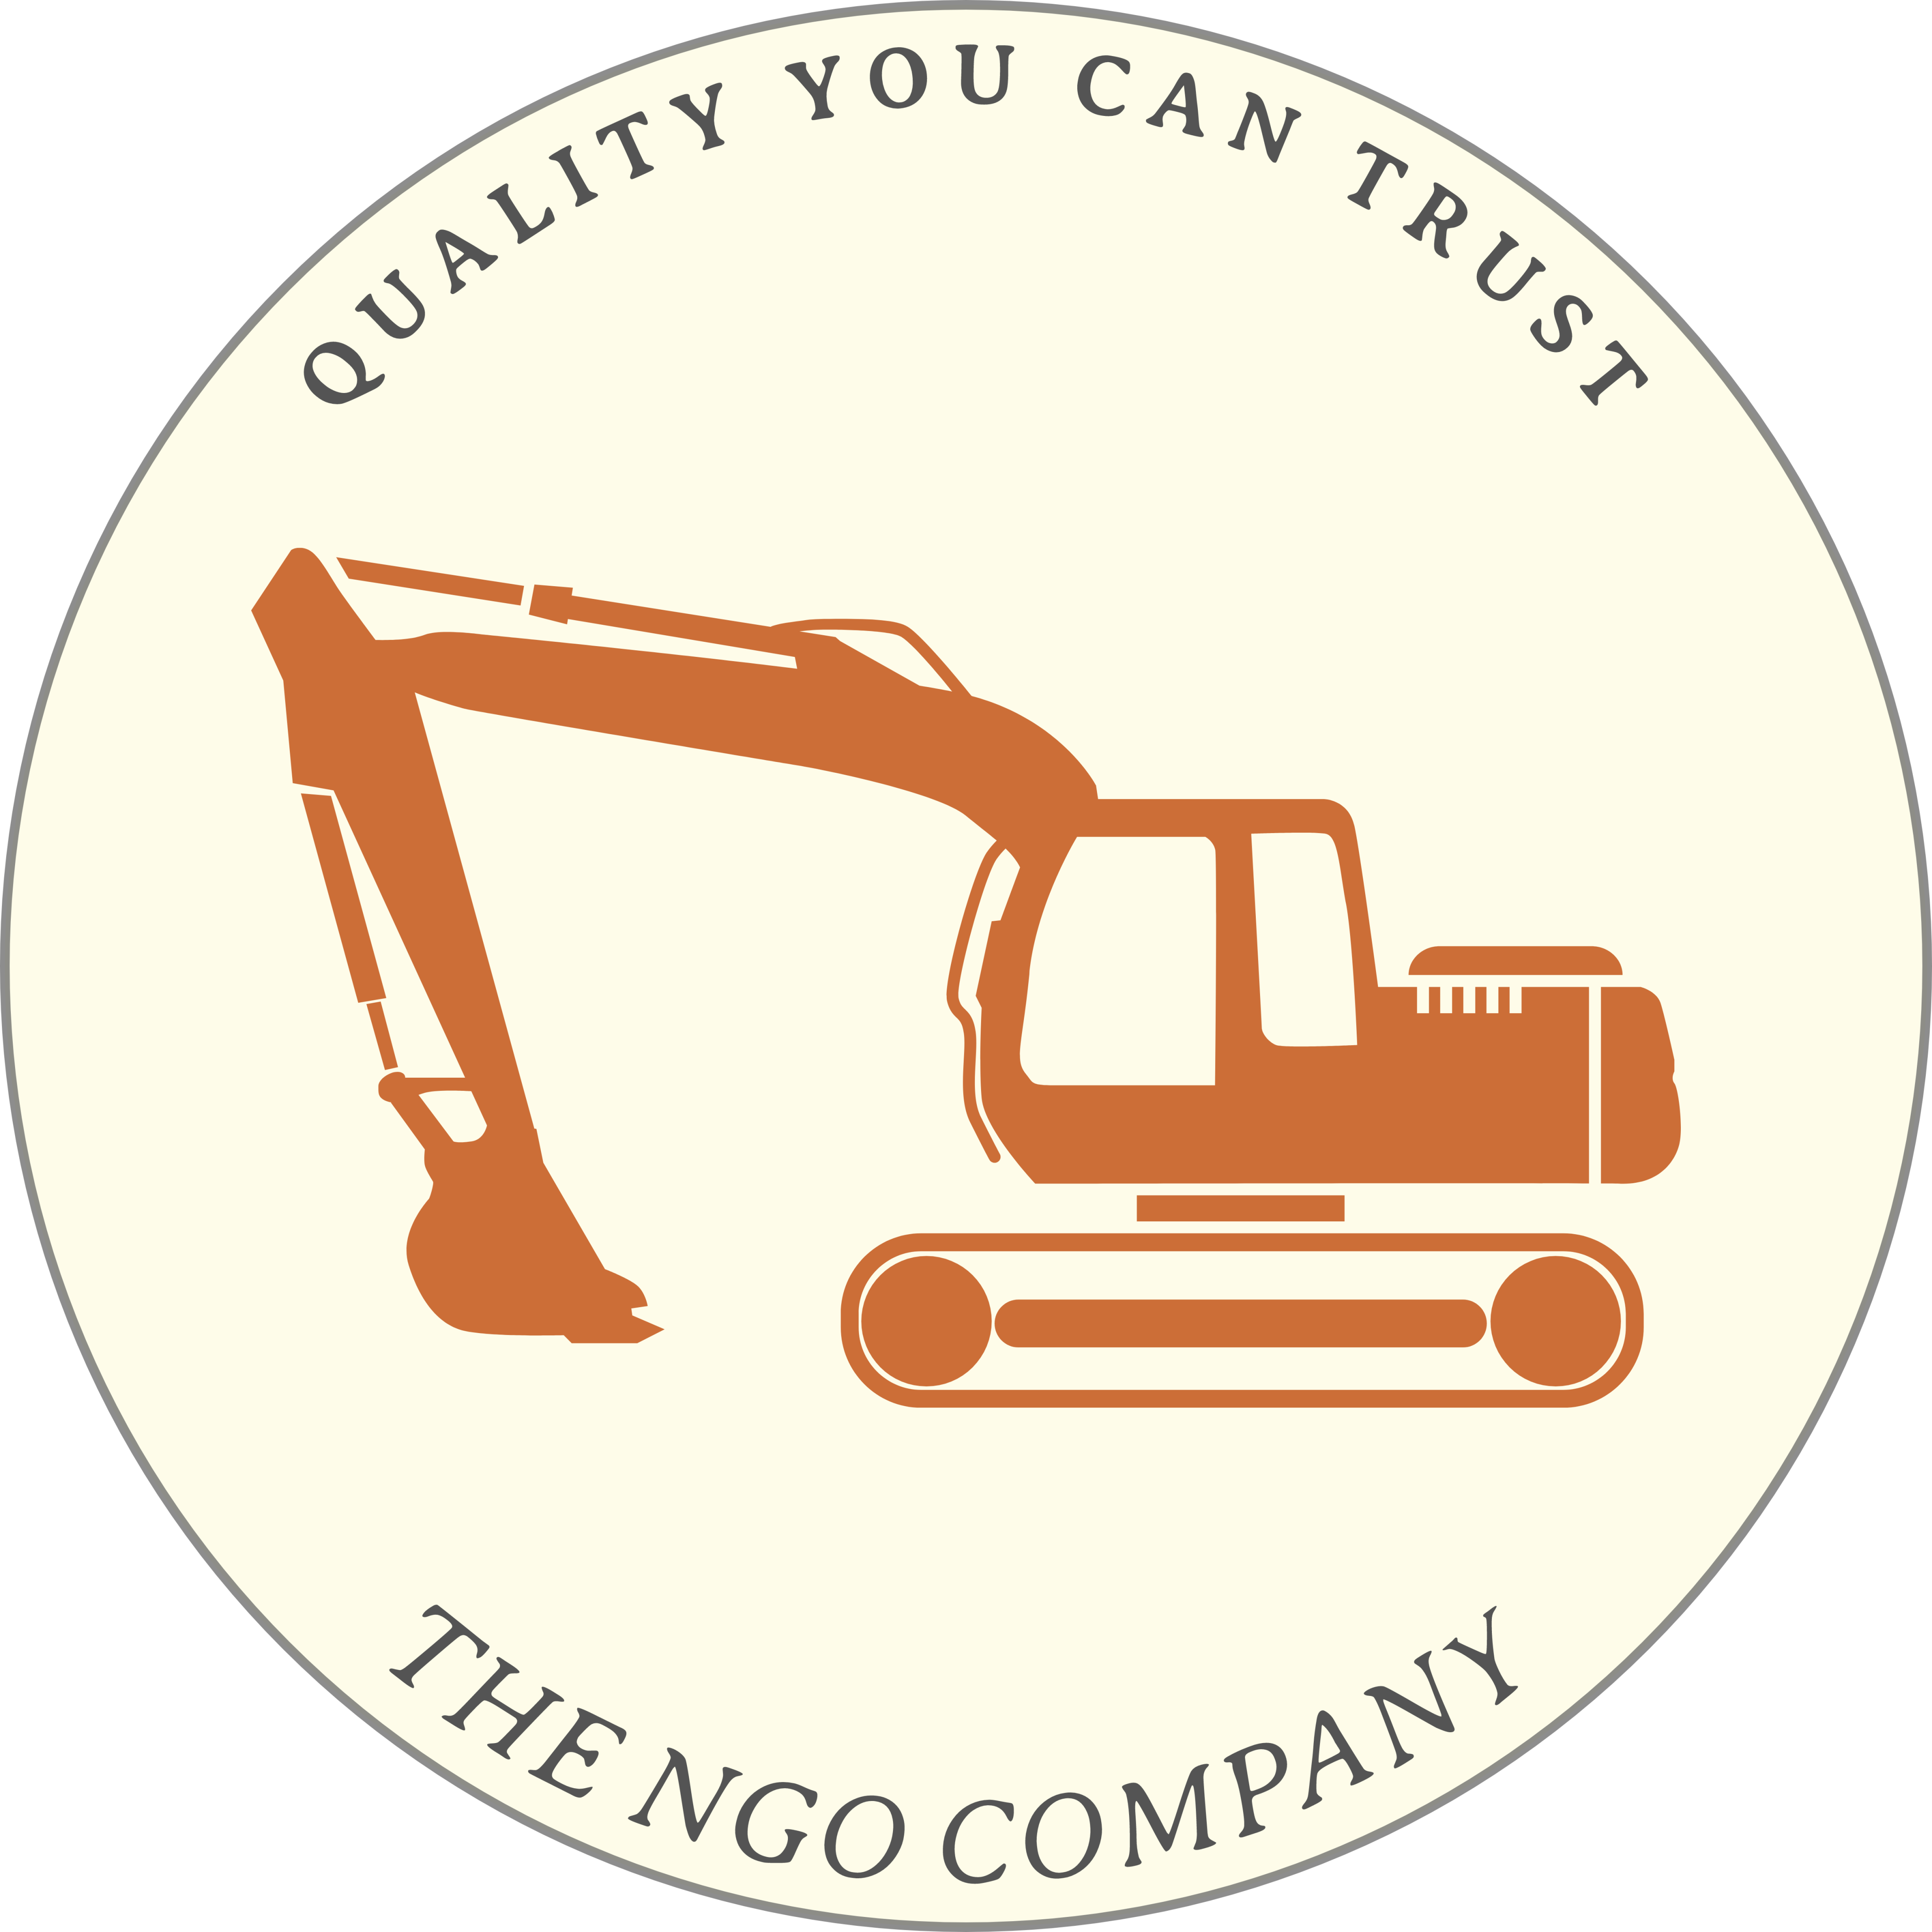 The NGO Company